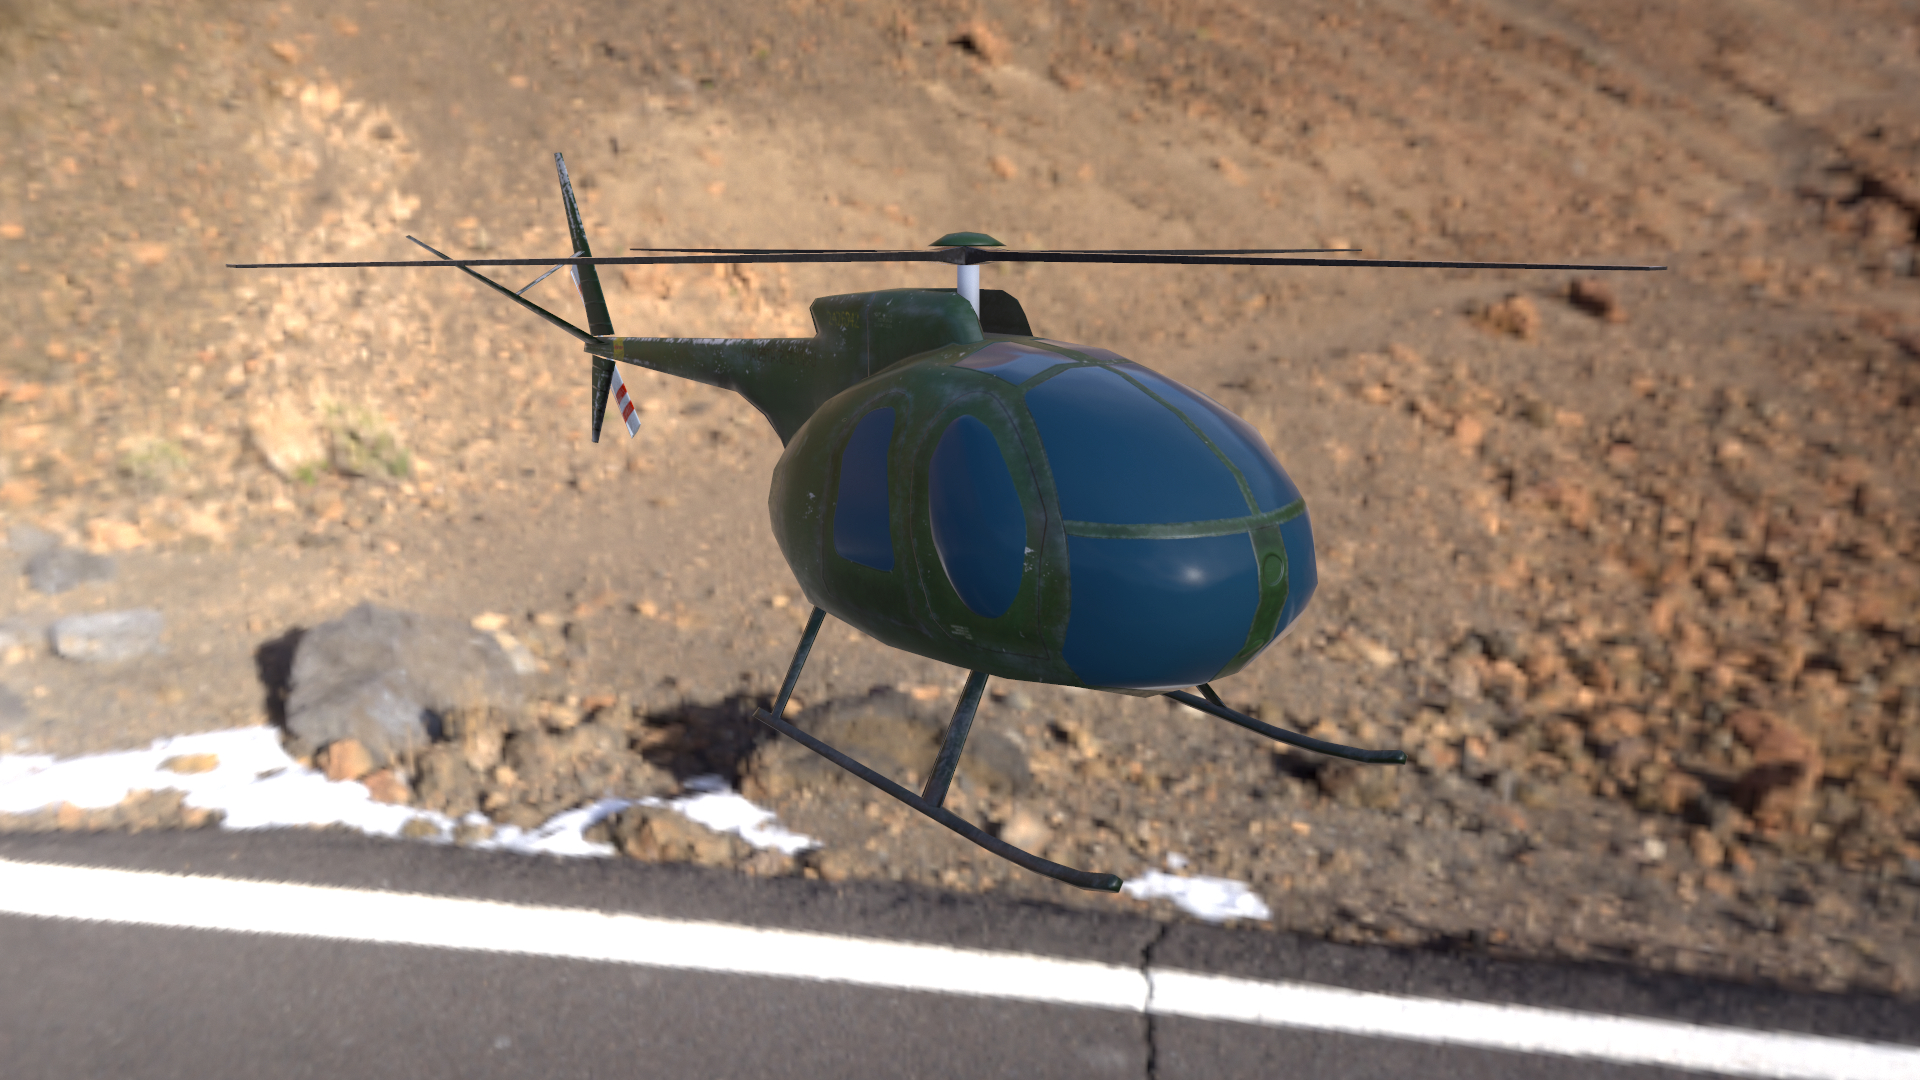 imagen de helicóptero lowpoly modelo Hughes OH-6 Cayuse para aplicaciones móviles en 3d max Other